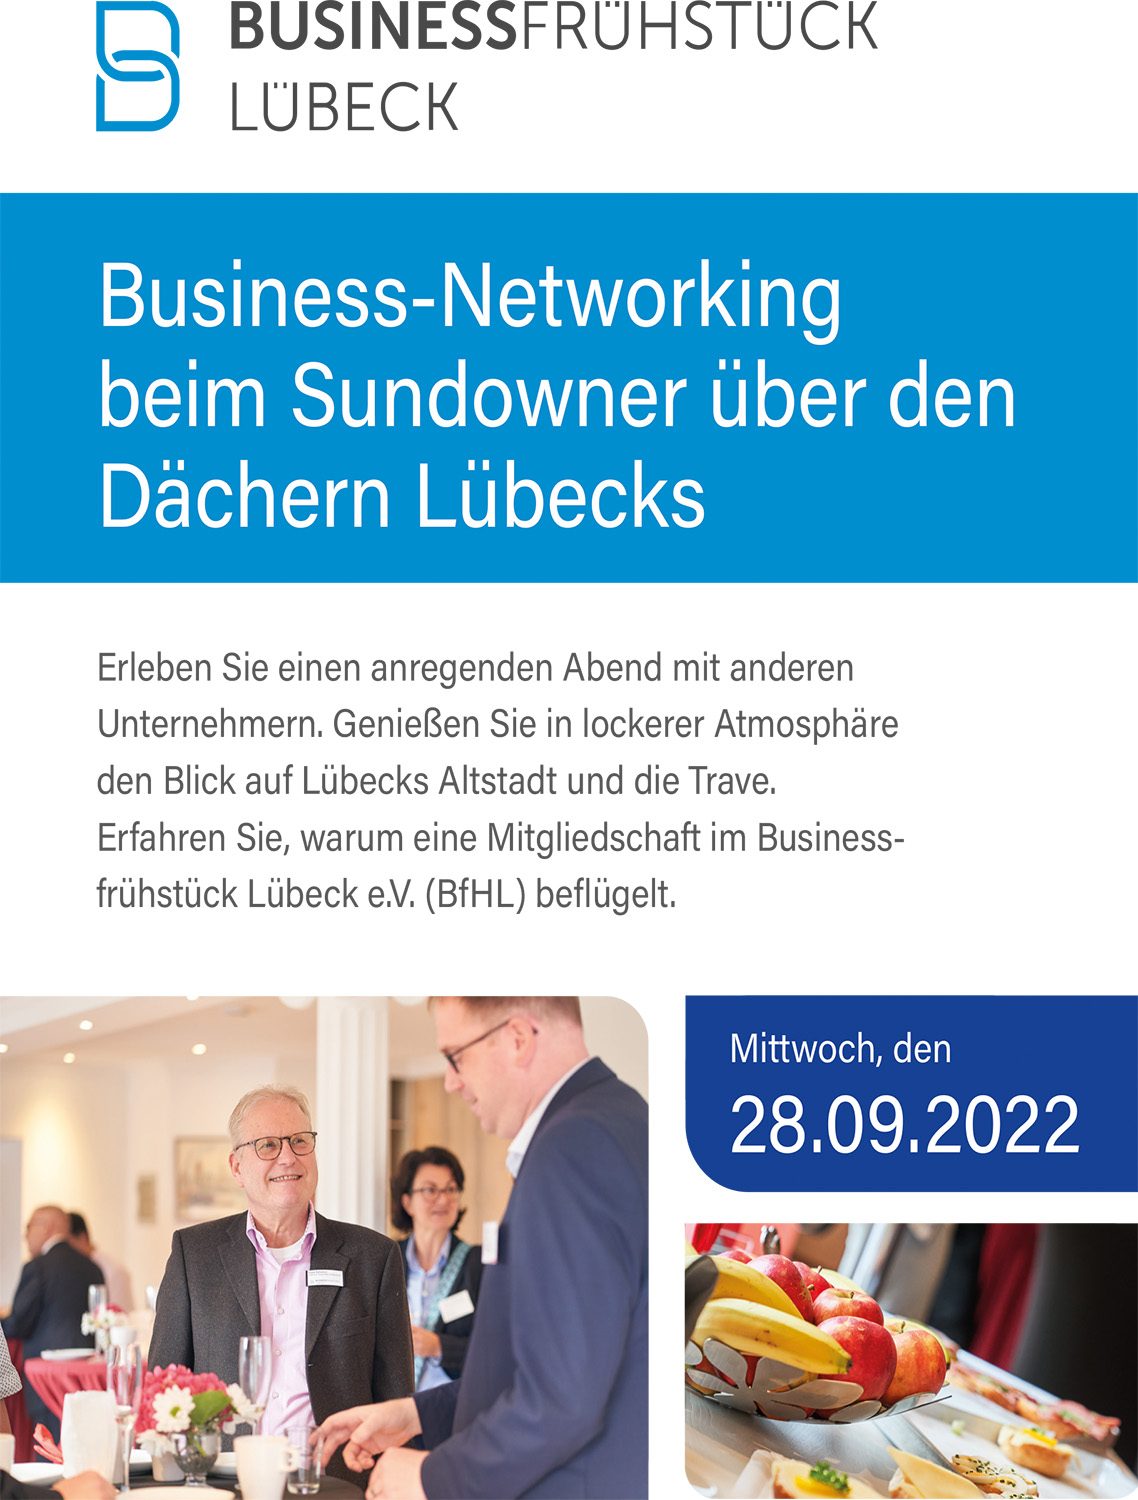 Business-Networking beim Sundowner über den Dächern Lübecks